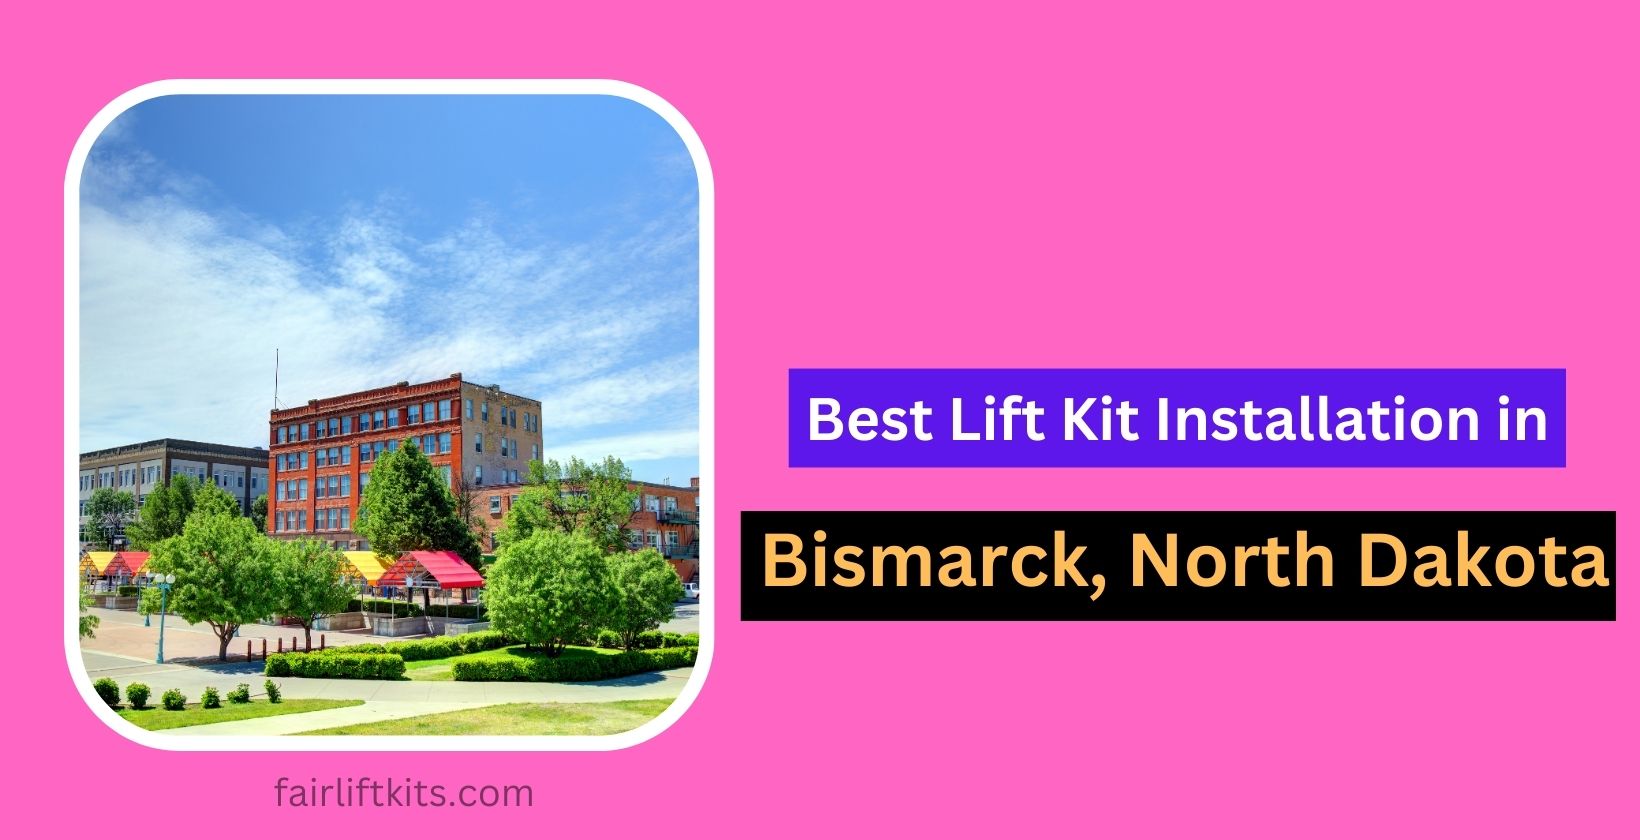 10 Best Lift Kit Installation in Bismarck